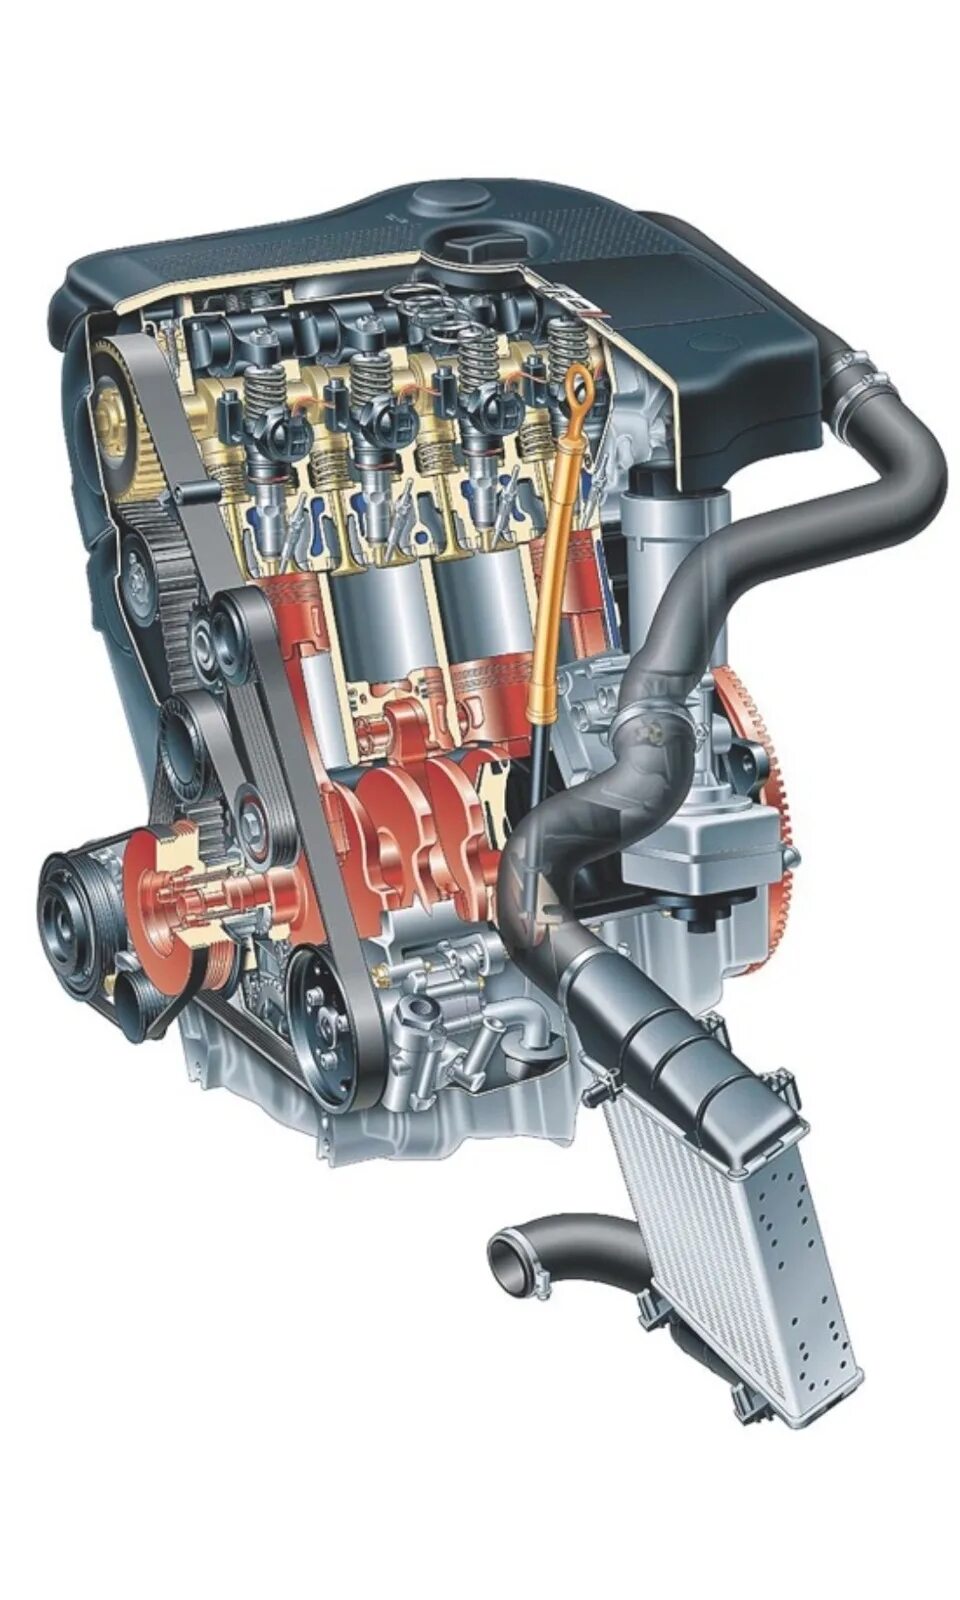 Дизель volkswagen 2.0. Мотор 1.9 тди. Двигатель Фольксваген 2.0 дизель. Двигатель 1 9 TDI Фольксваген. Audi a8 4.1 TDI двигатель.